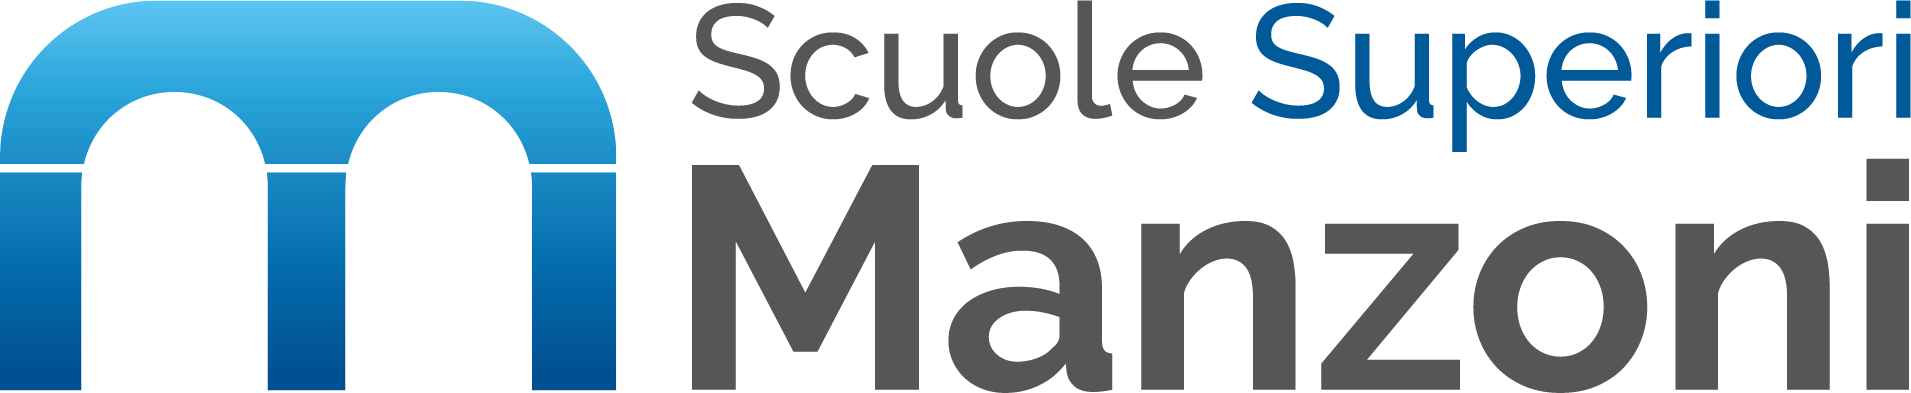 Logo Scuole Manzoni superiori